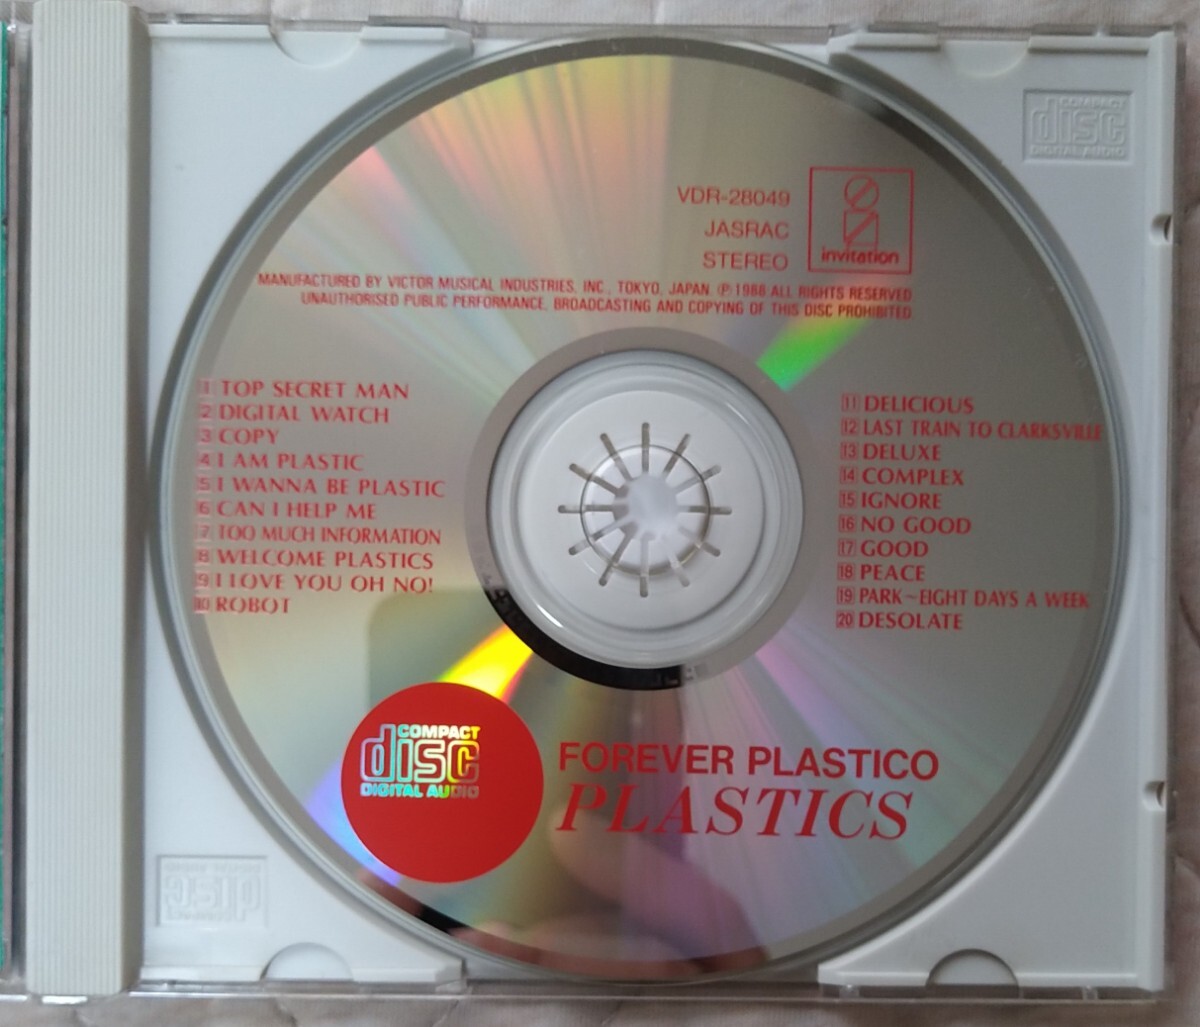 プラスチックス フォーエバー・プラスティコ 旧規格帯付国内盤中古CD PLASTICS FOREVER PLASTICO 中西俊夫 立花ハジメ 佐久間正英 VDR28049_画像3